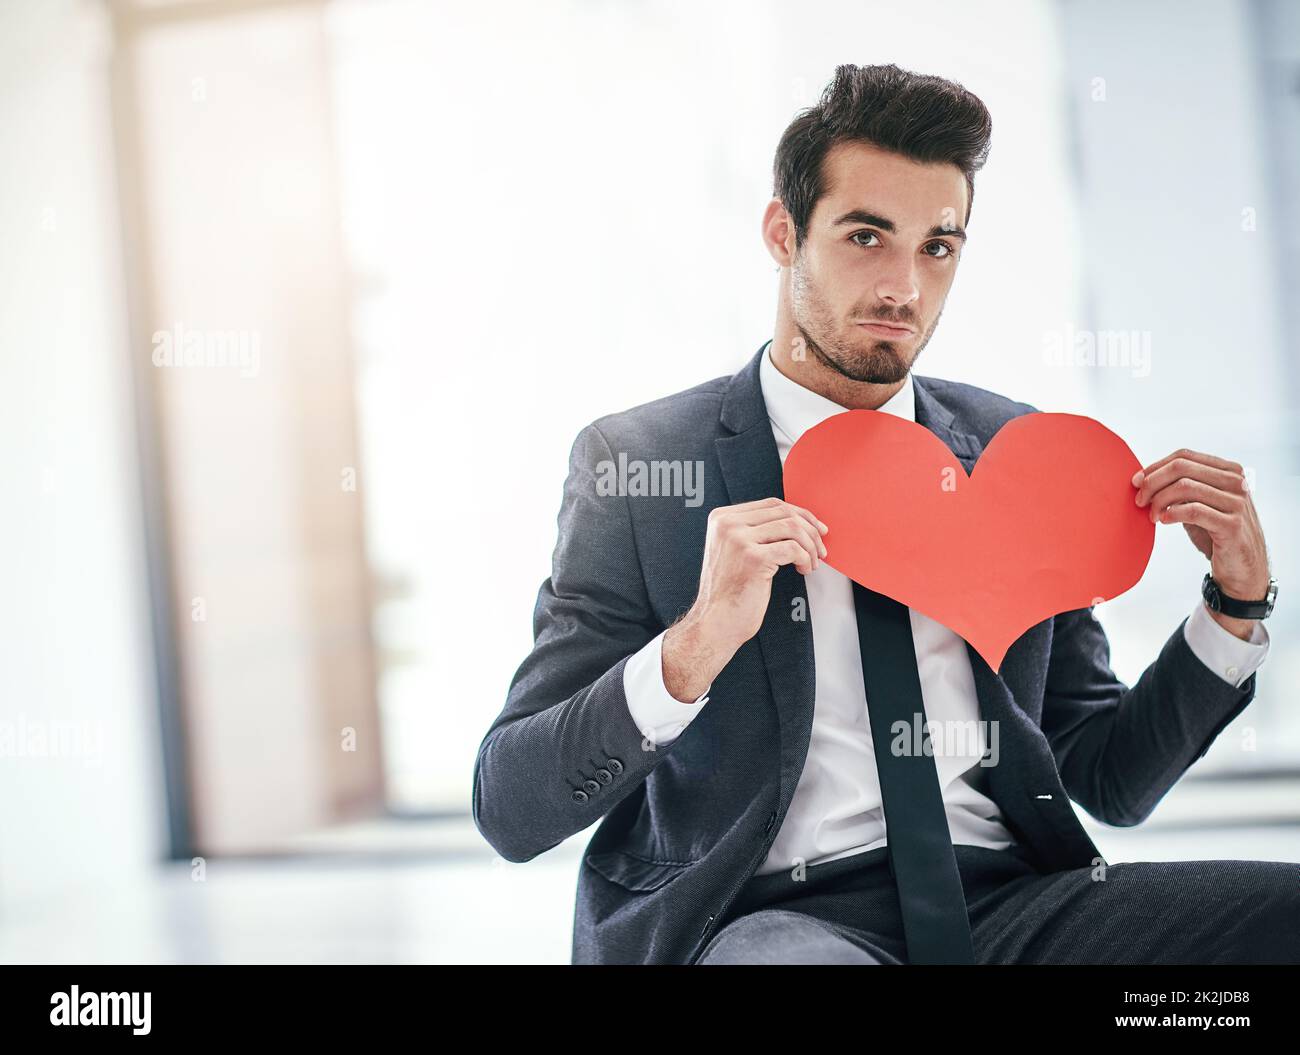 Mir würde ein wenig Büroromantik nichts ausmachen. Porträt eines trendigen jungen Geschäftsmannes, der mit einem Papierherz im Büro posiert. Stockfoto